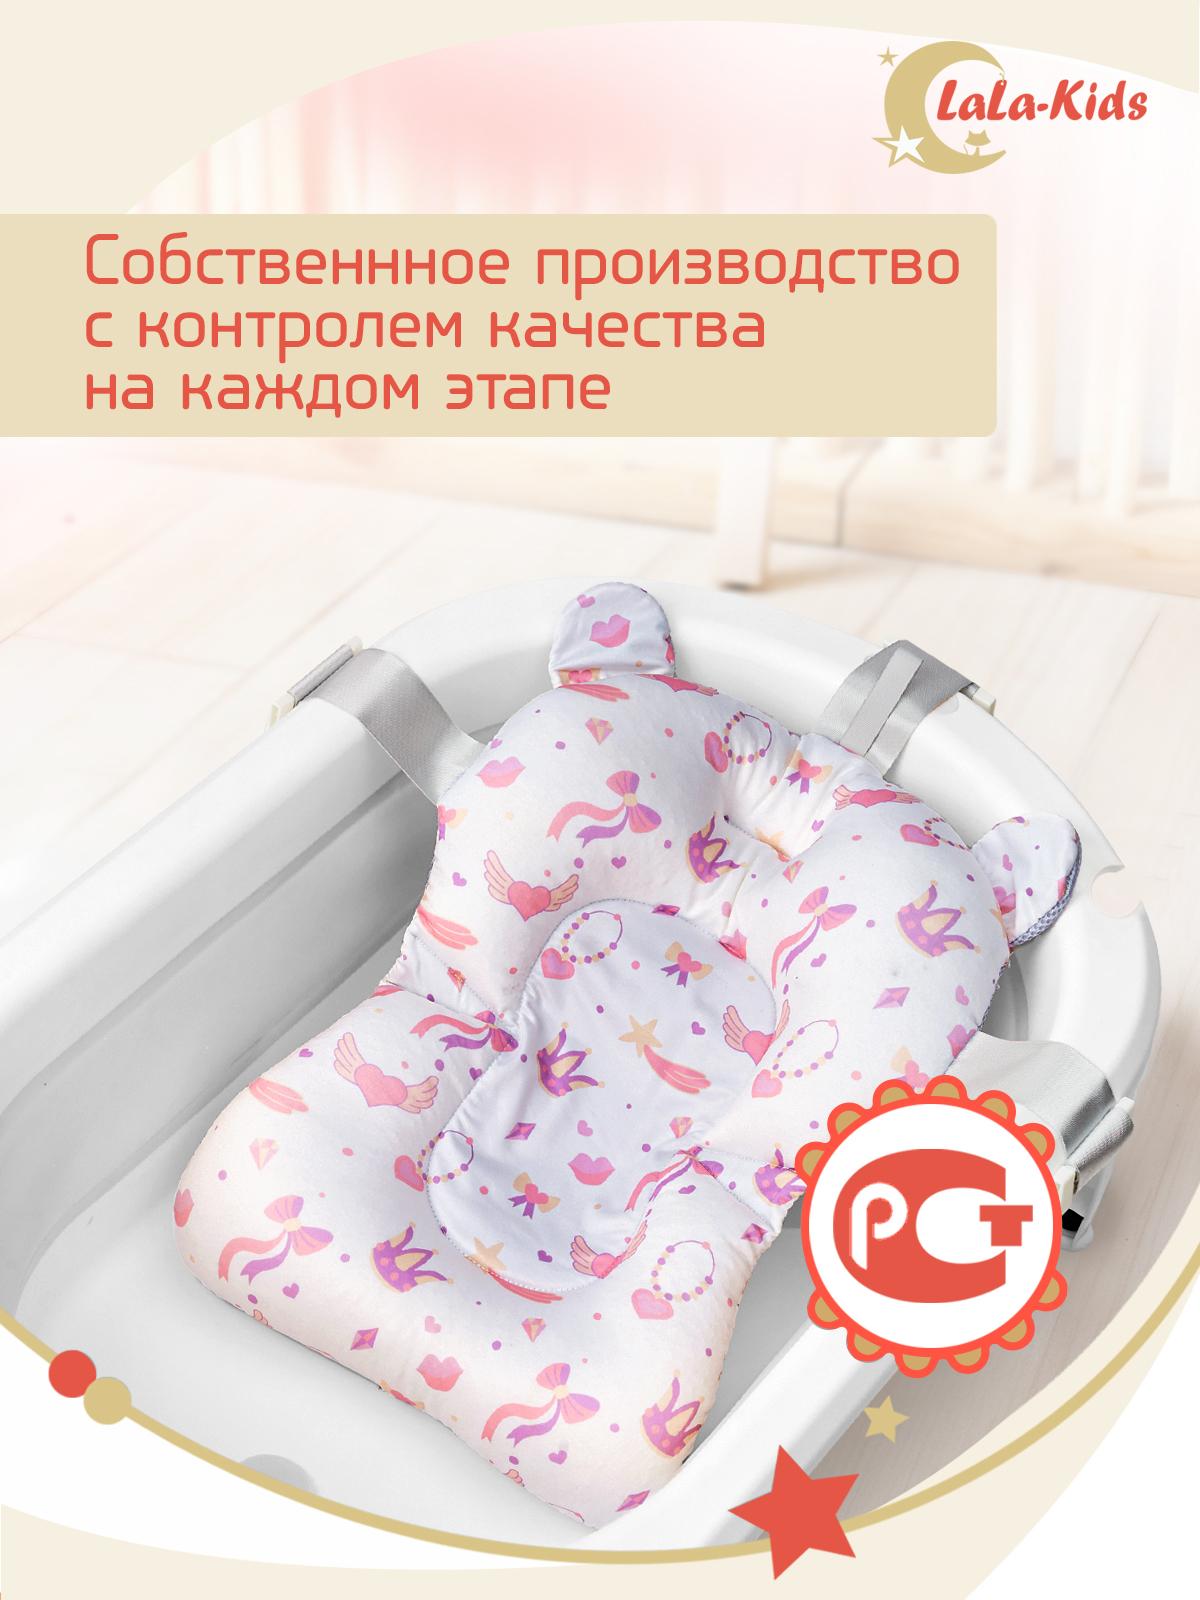 Детская ванночка с термометром LaLa-Kids складная с матрасиком персиковым в комплекте - фото 20